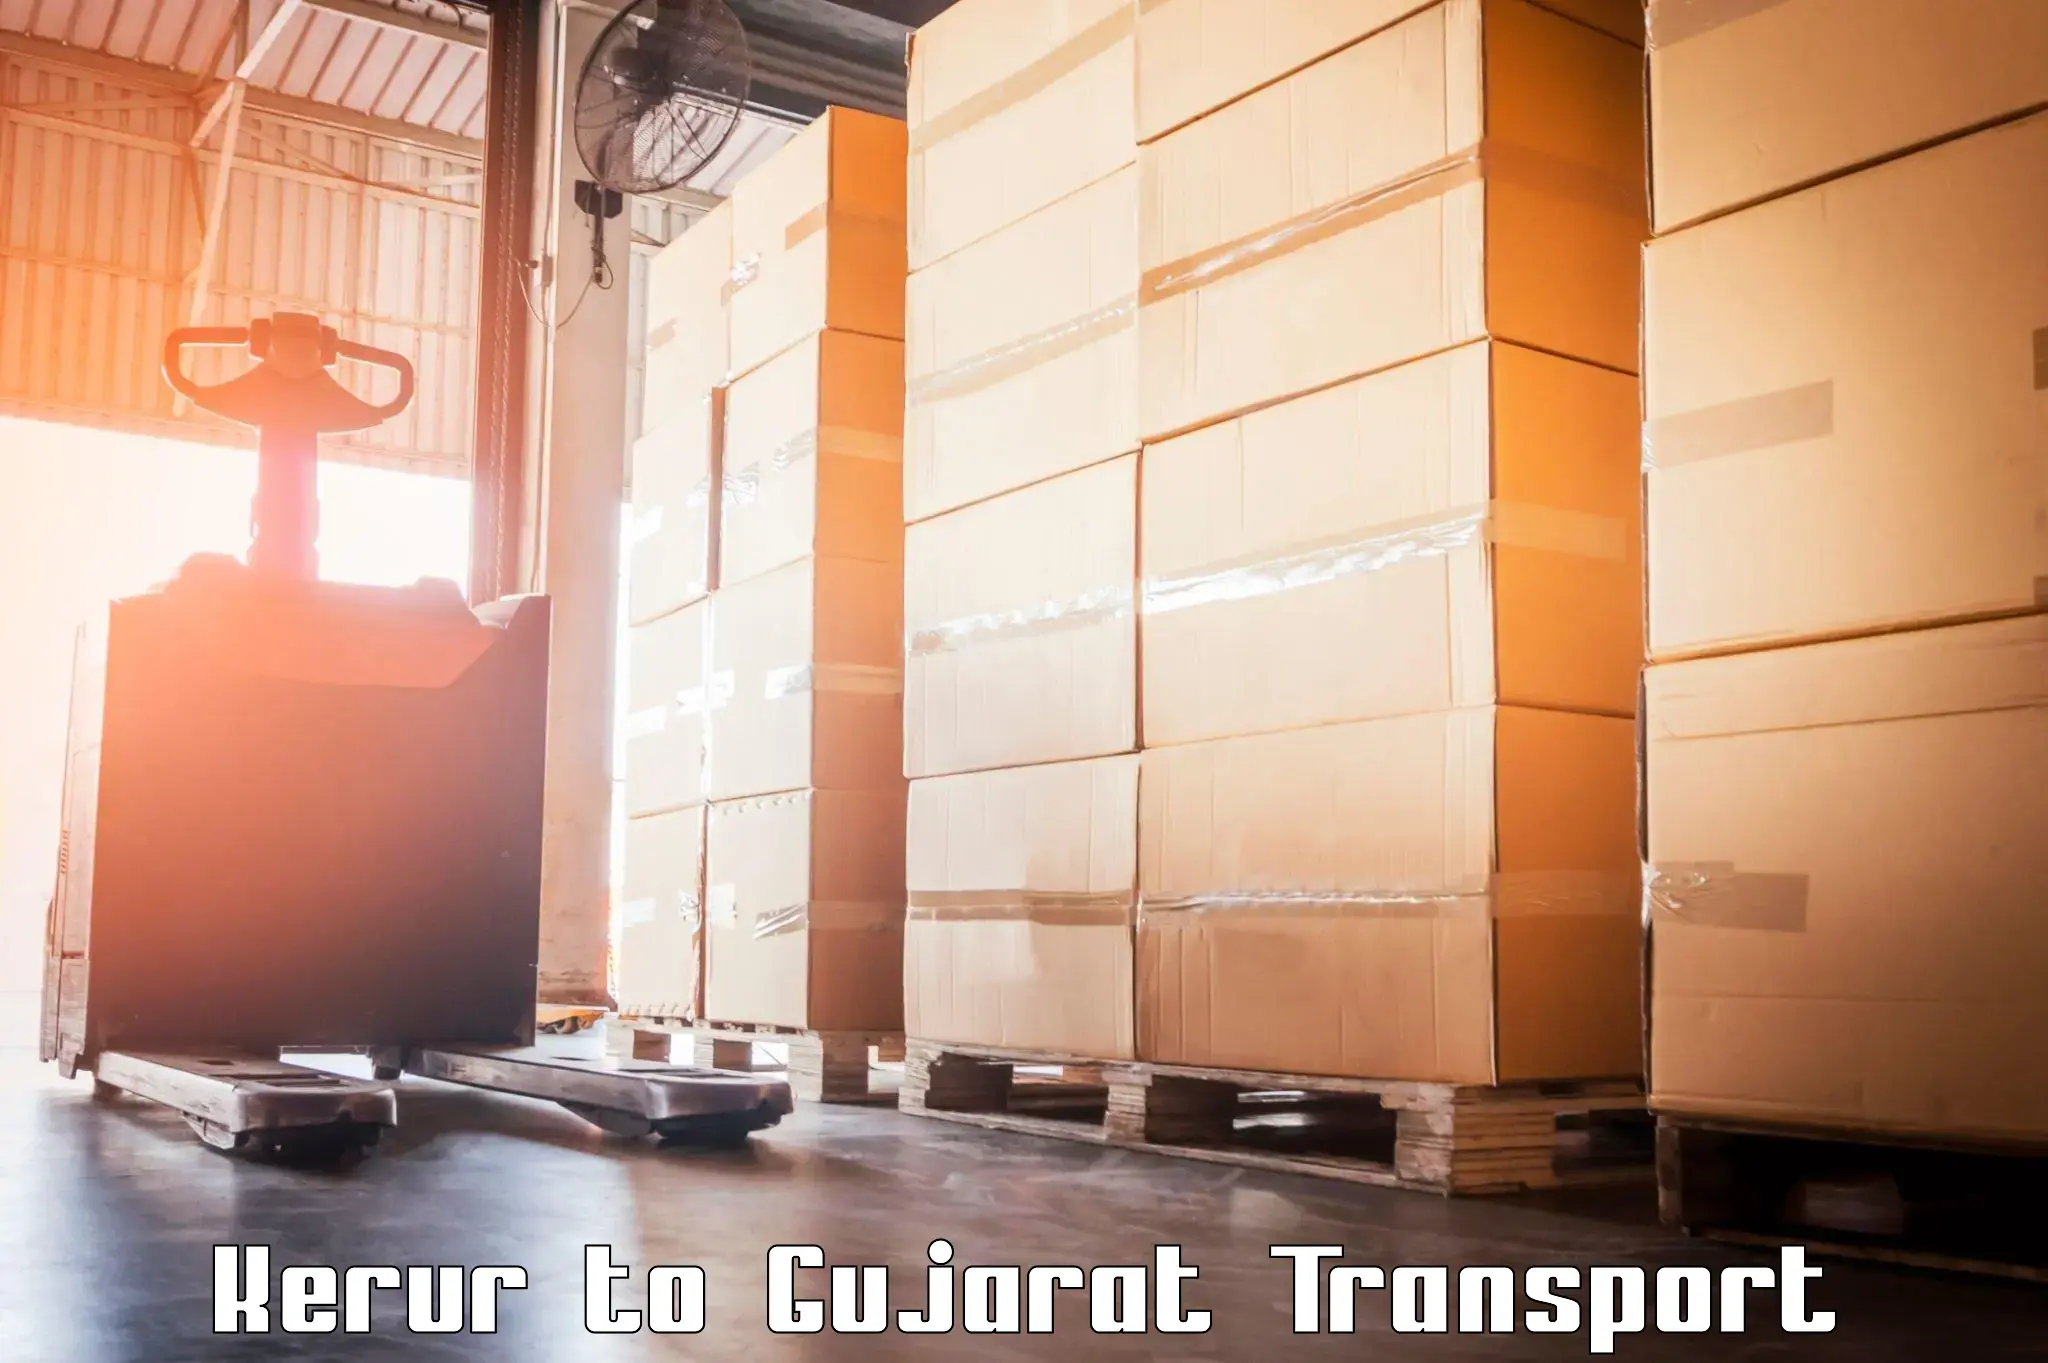 Container transport service Kerur to Fateganj